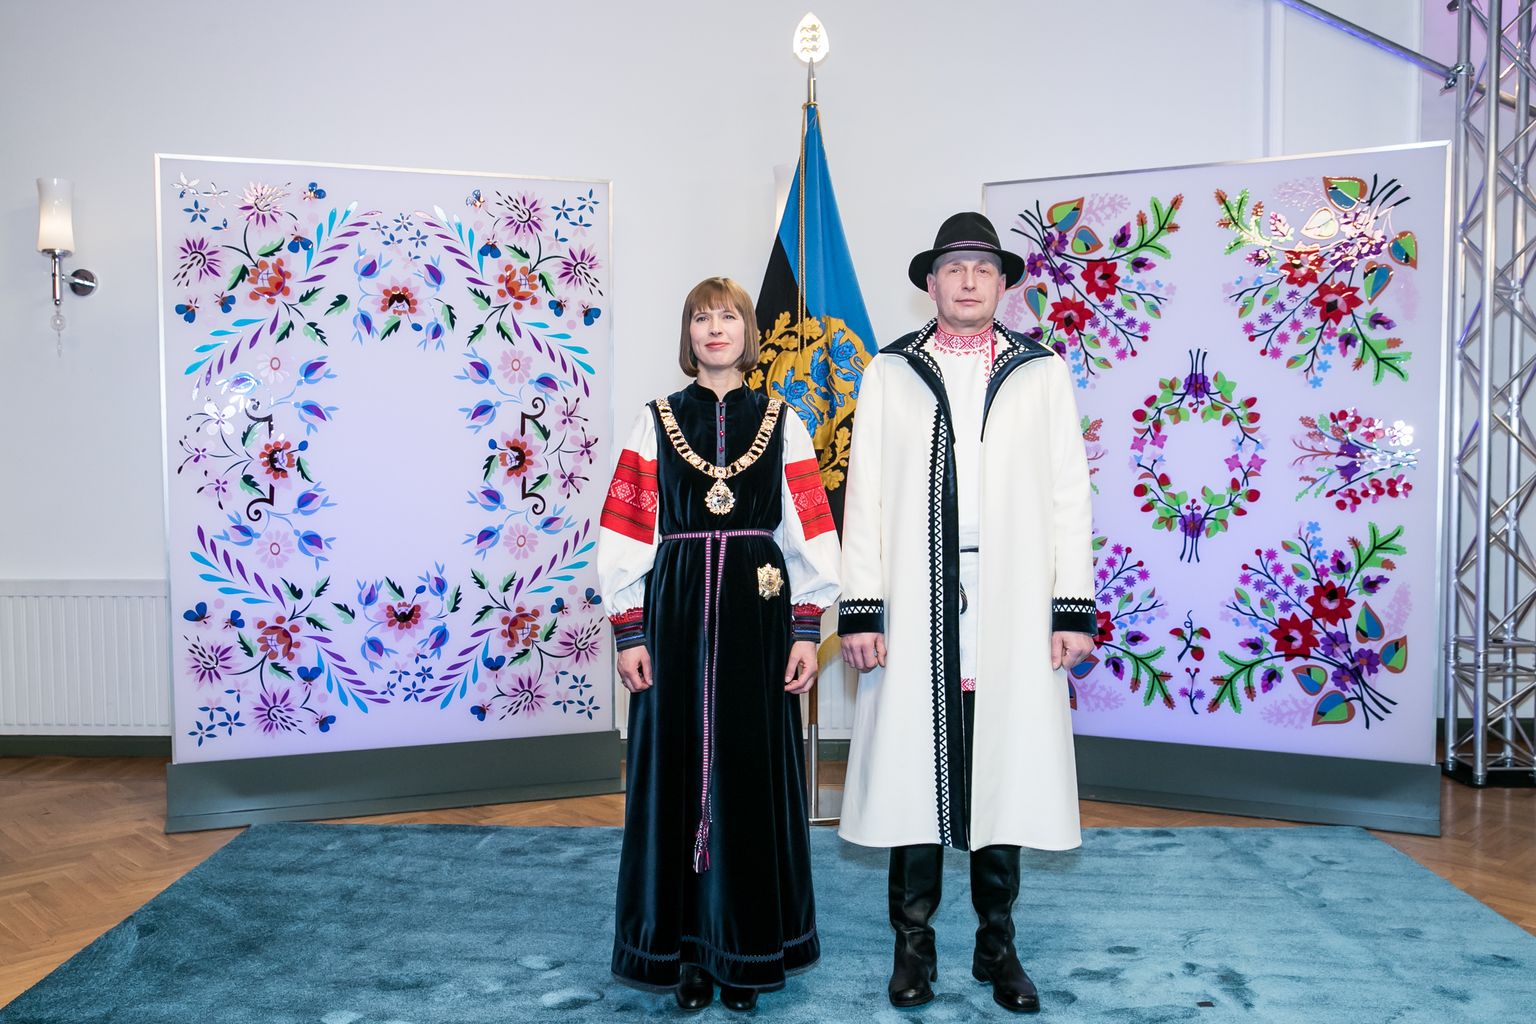 Tallinn, 24.02.2017
Eesti Vabariigi 99 aastapäev. 
Pildil president Kersti kaljulaid ja Georgi-Rene Maksimovski.